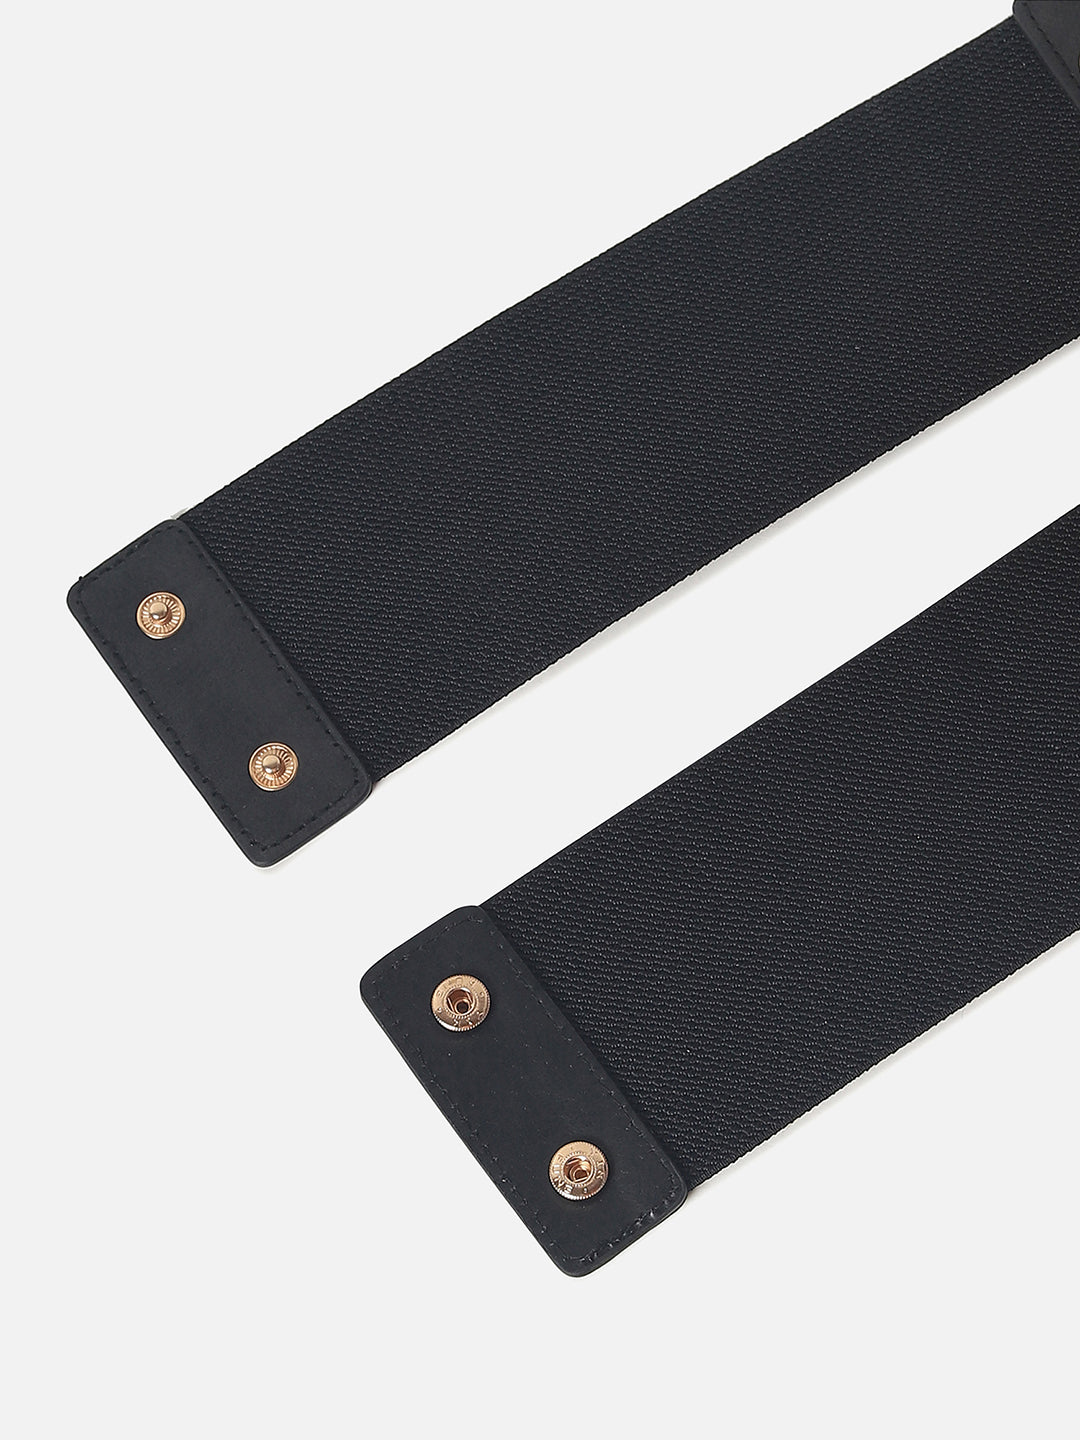 Black Textured Stretch Waist Belt